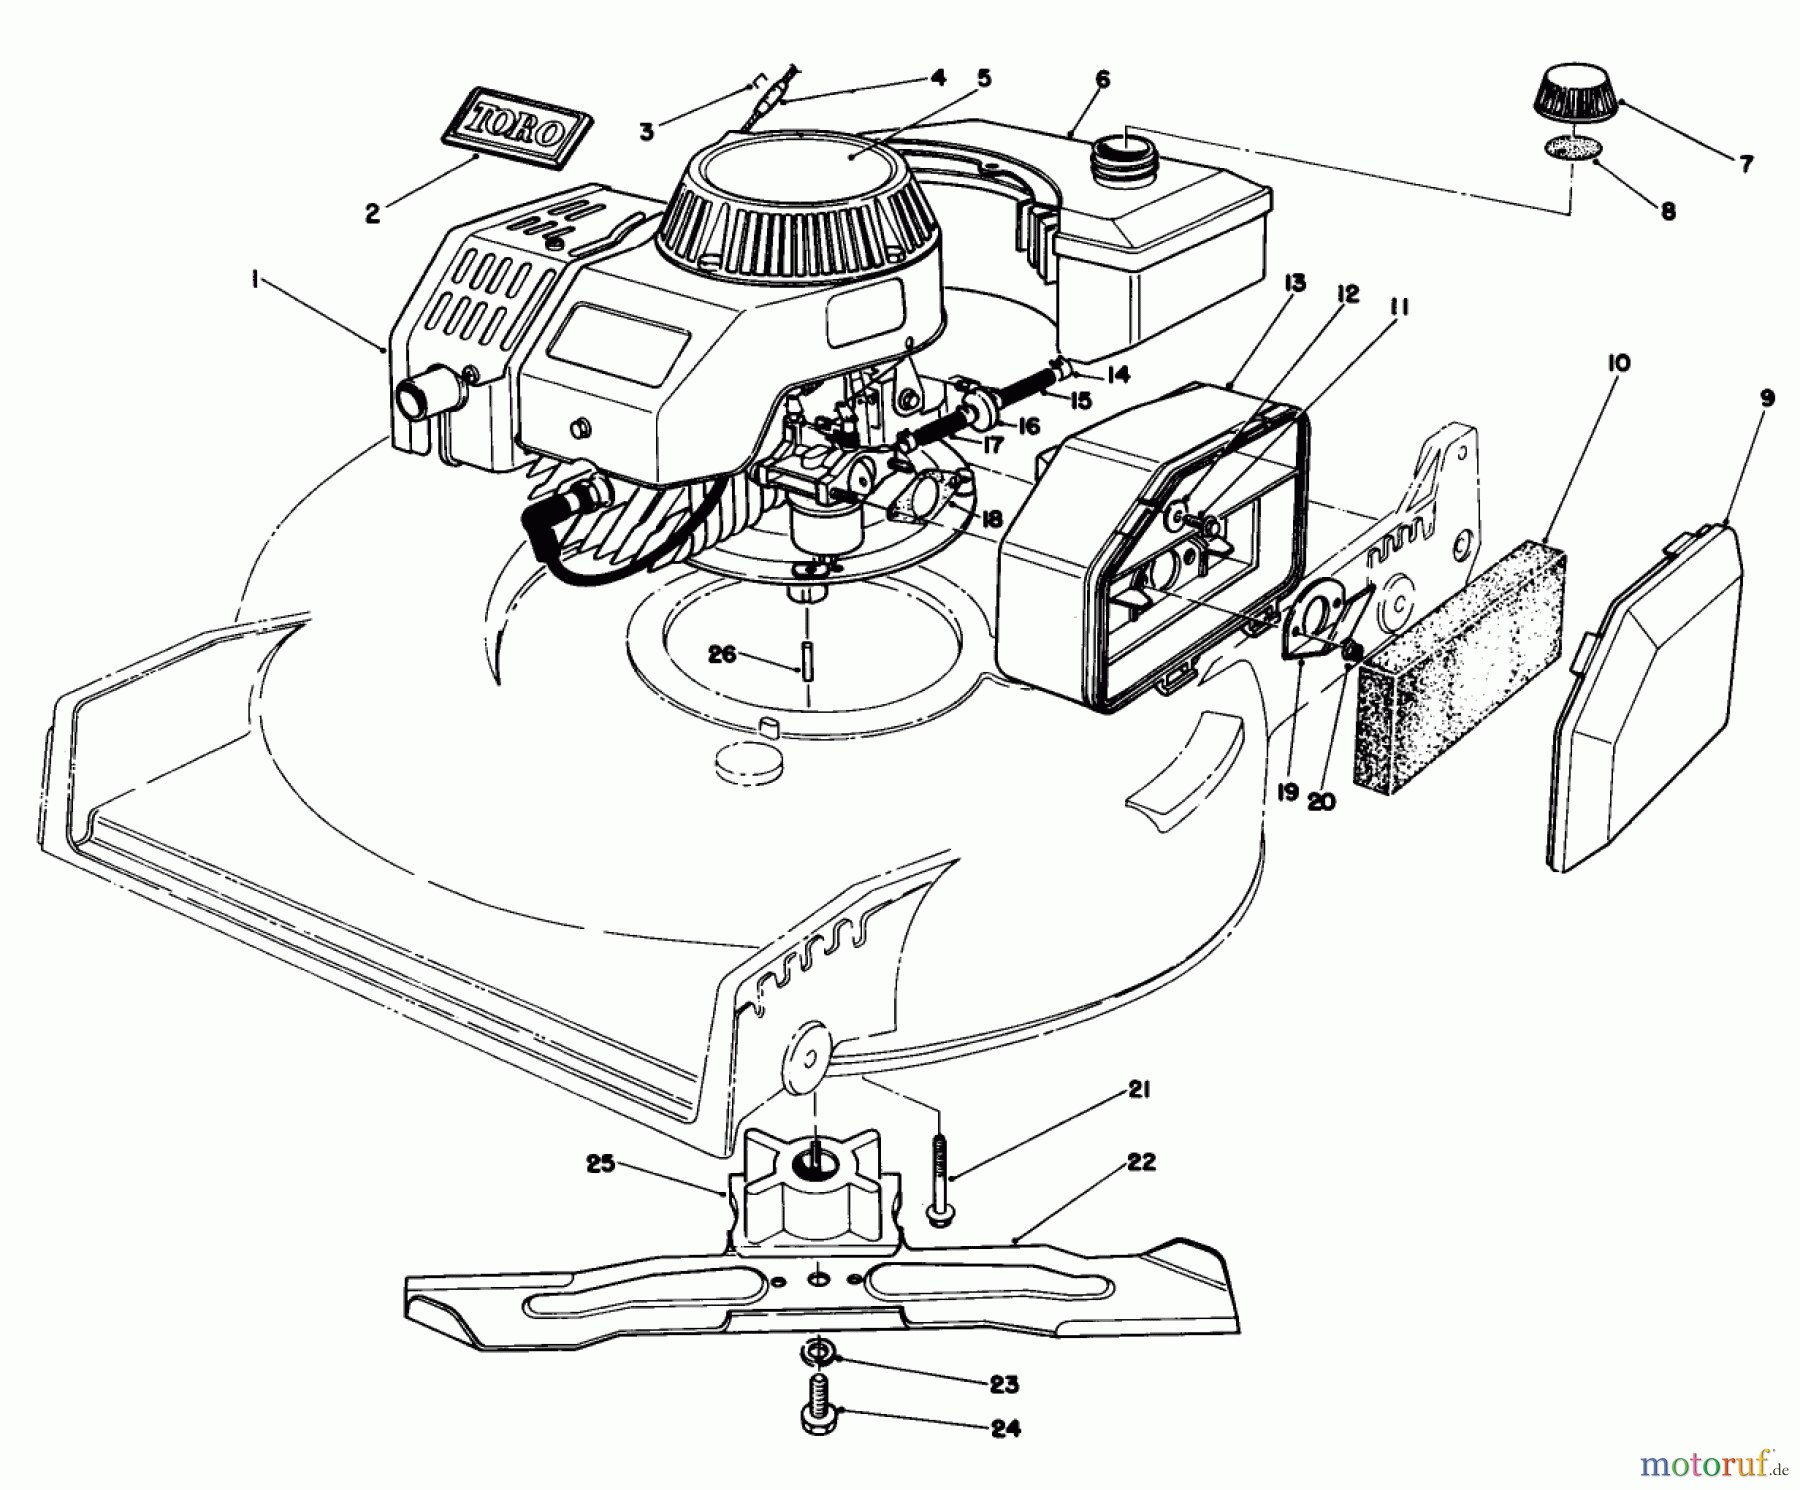  Toro Neu Mowers, Walk-Behind Seite 1 20581 - Toro Lawnmower, 1986 (6000001-6999999) ENGINE ASSEMBLY